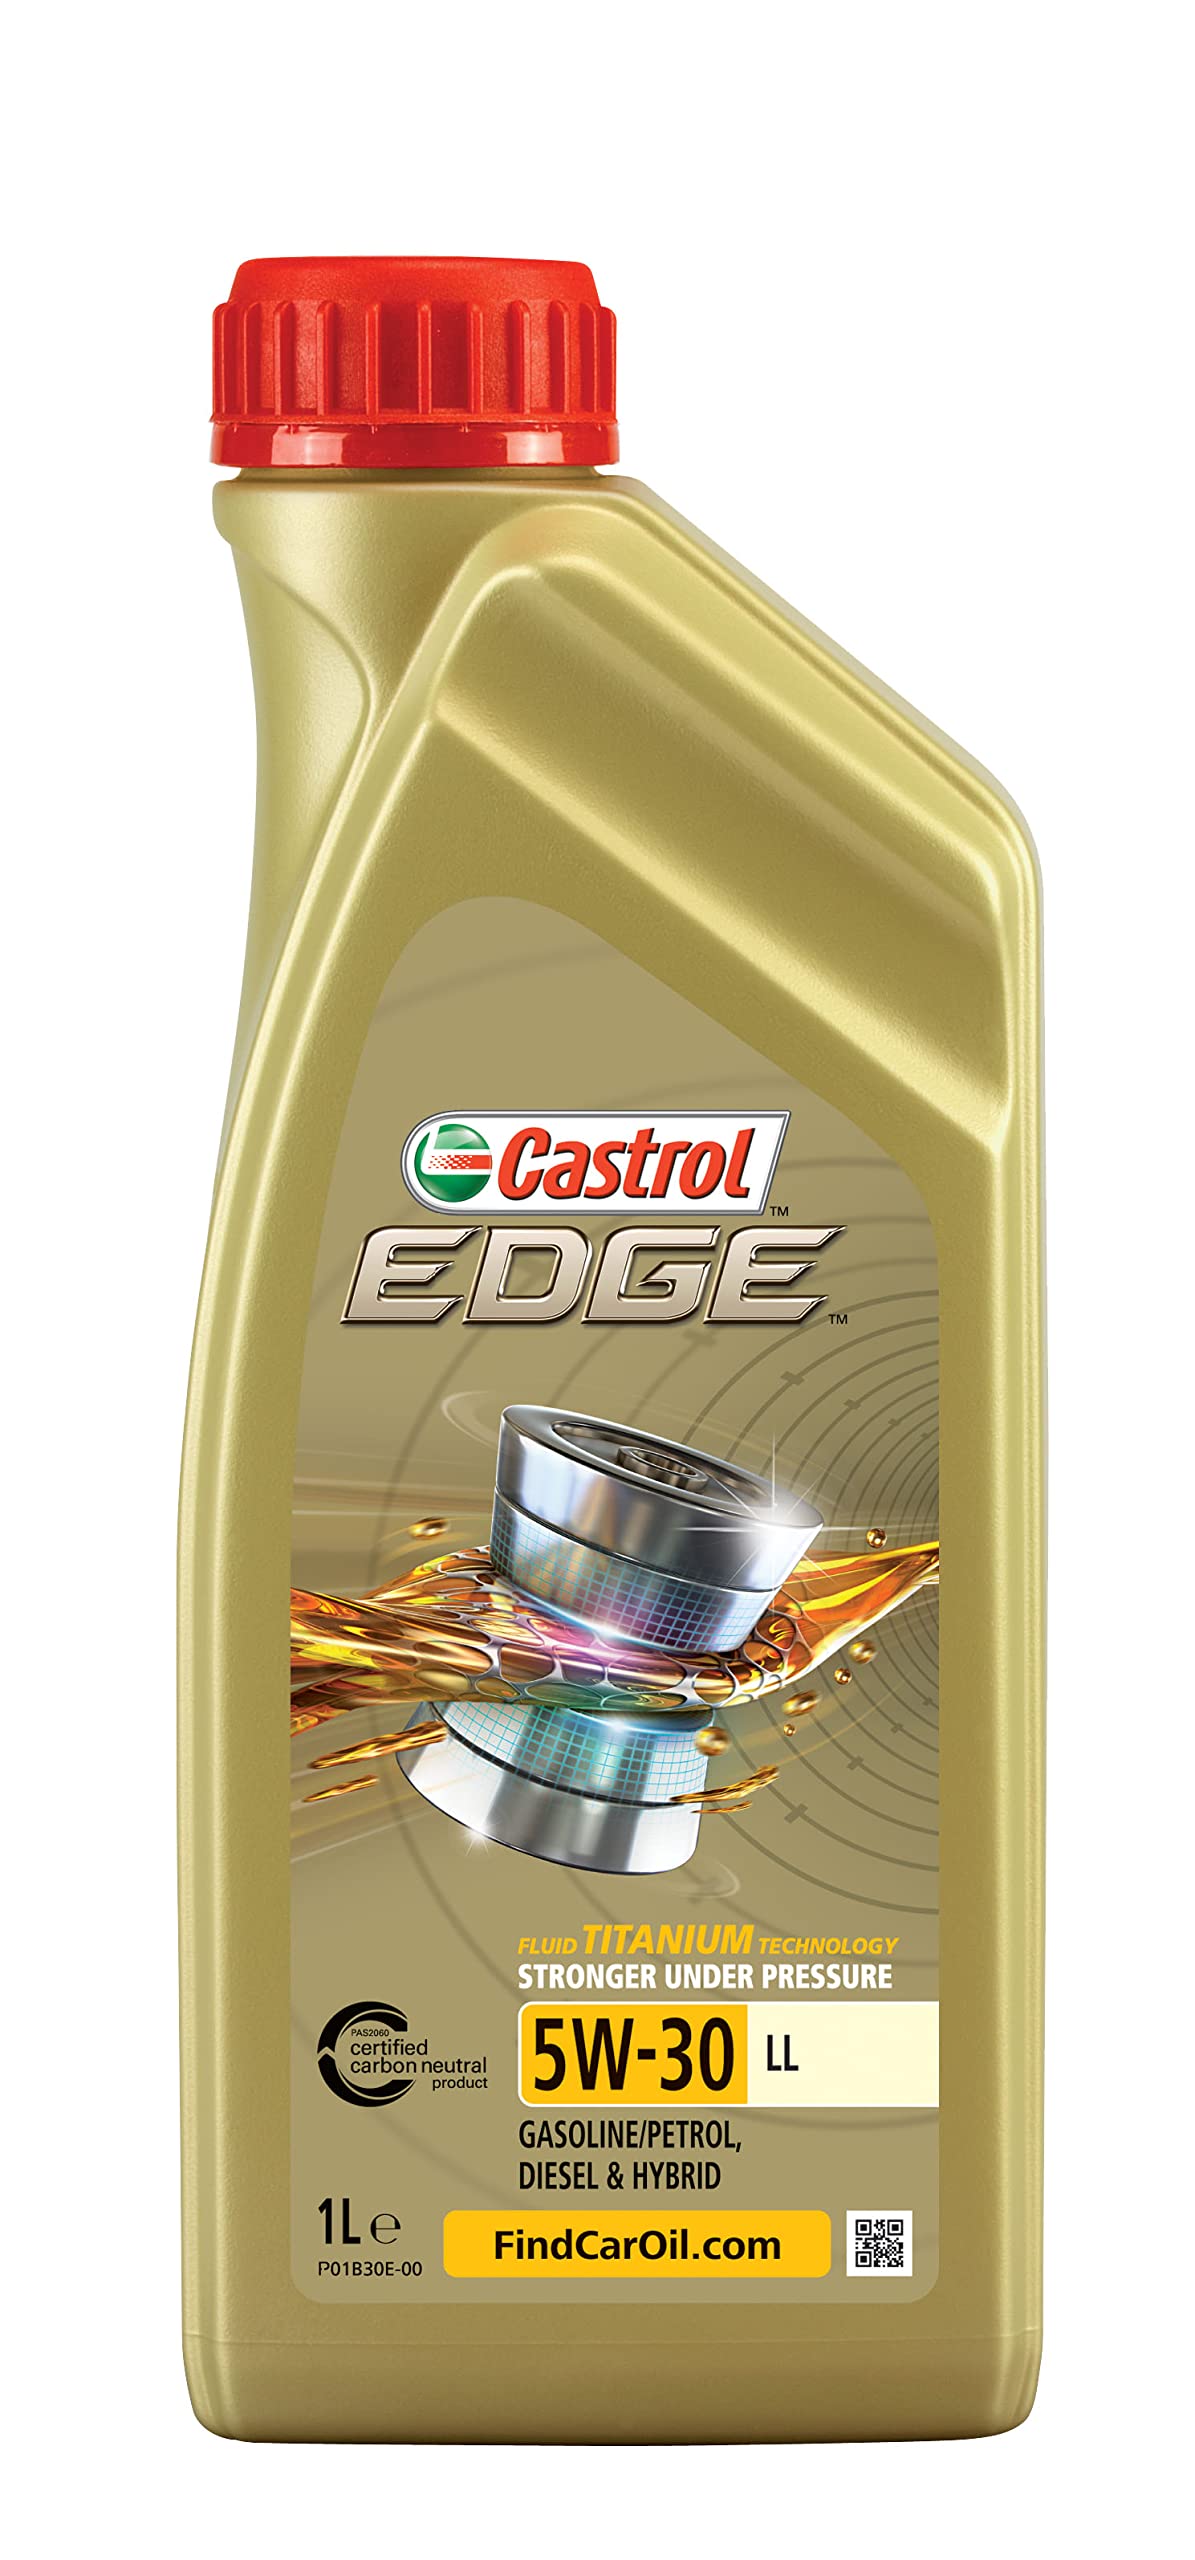 Castrol EDGE 5W-30 LL, 1 Liter von Castrol